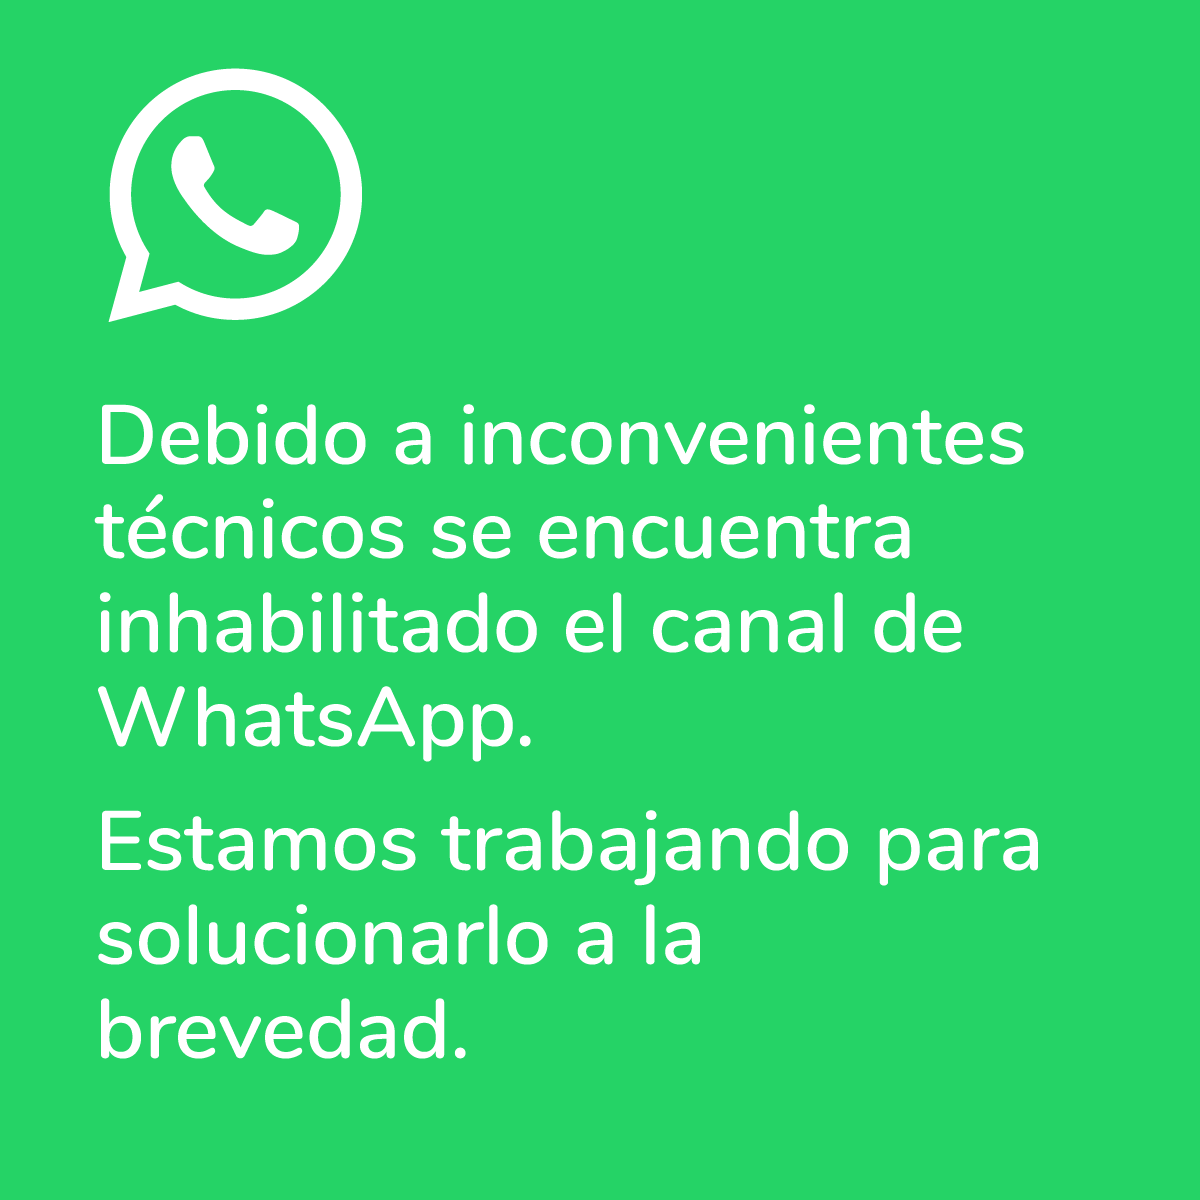 Debido a inconvenientes técnicos se encuentra inhabilitado el canal de WhatsApp. 
Estamos trabajando para solucionarlo a la brevedad.